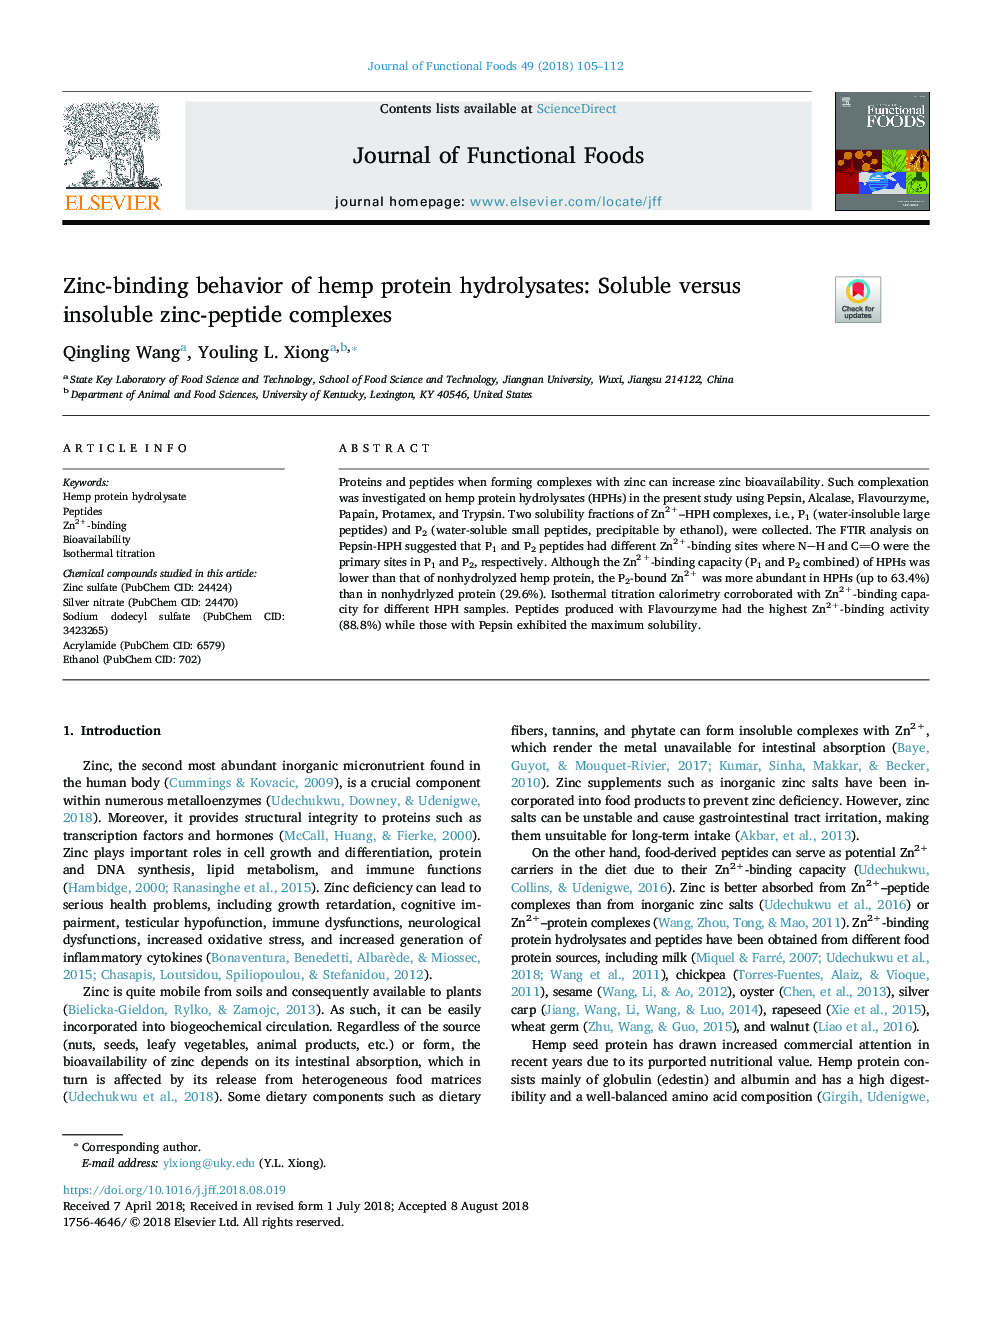 رفتار اتصال روی بافت هیدرولیز پروتئین کپس: مجتمع روی پپتیدی محلول در برابر غیر محلول